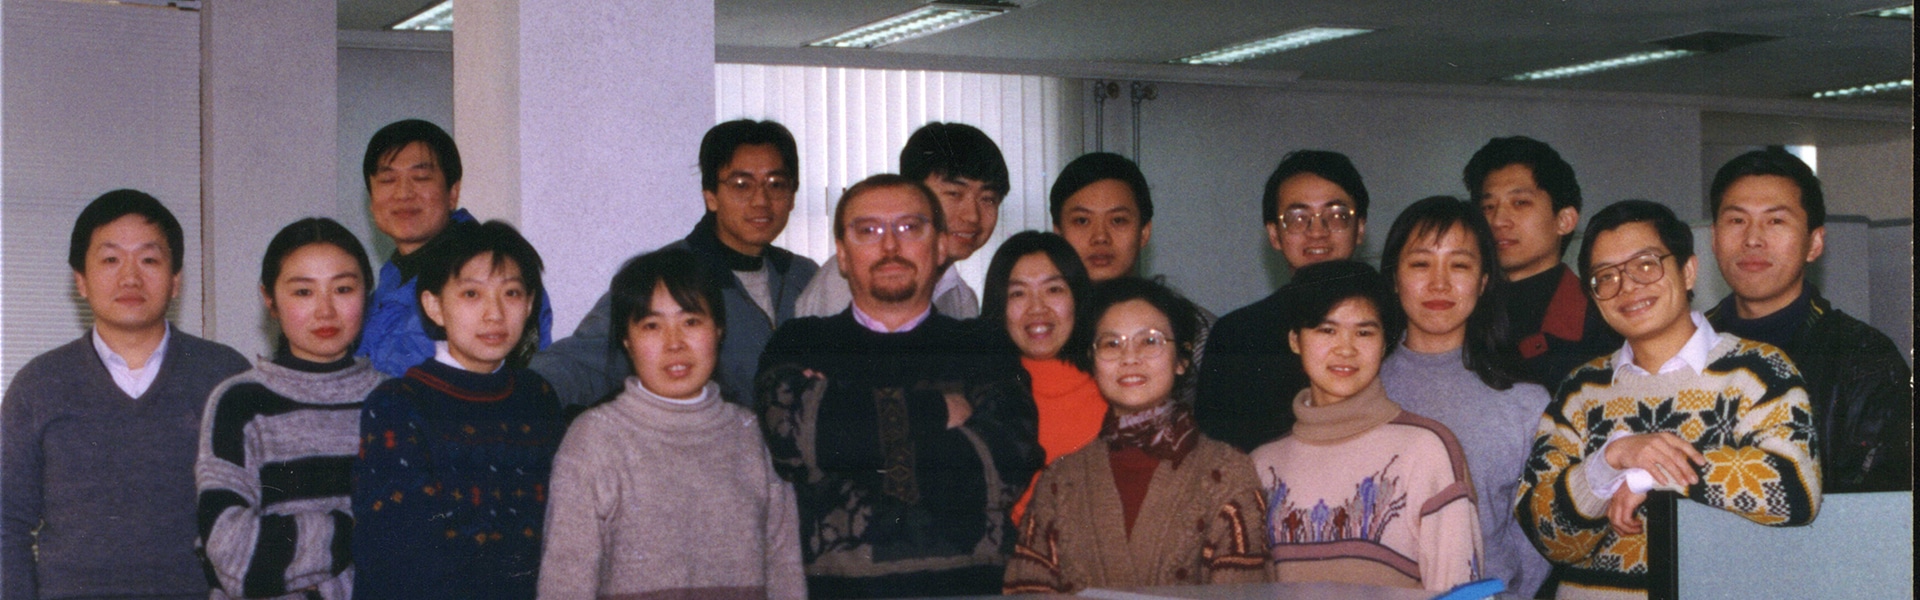 Neuland im Reich der Mitte – 25 Jahre SAP in China (Teil 1)